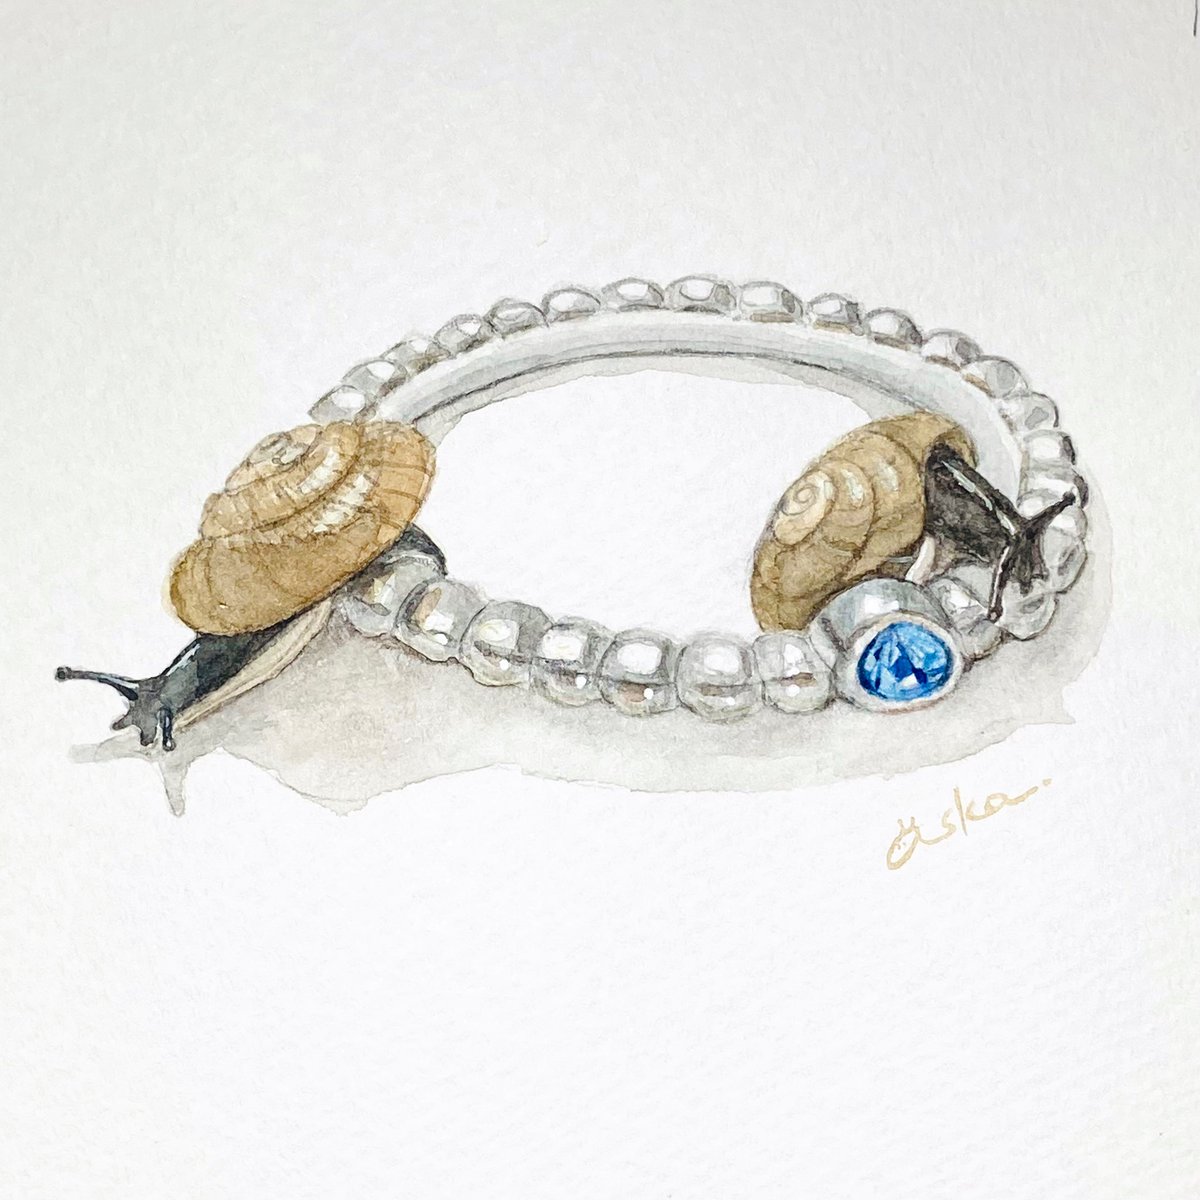 「カタツムリと指輪 #カタツムリと #水彩」|みなみあすかのイラスト